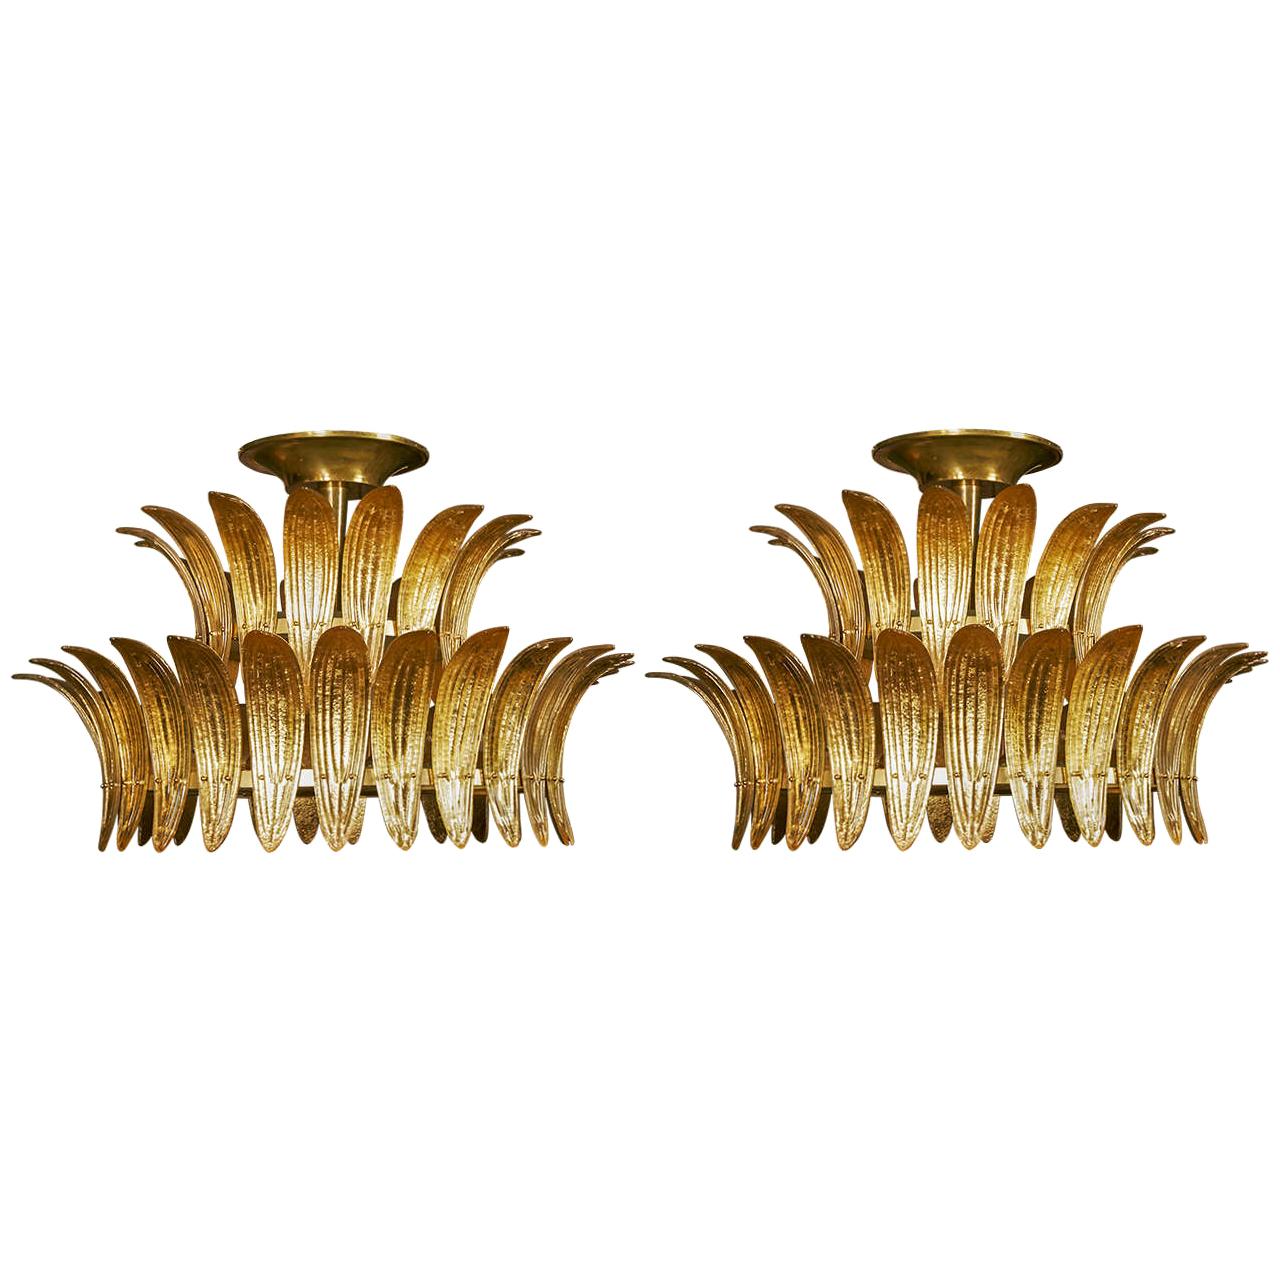 Beautiful Pair of Murano Glass Chandeliers by Studio Glustin